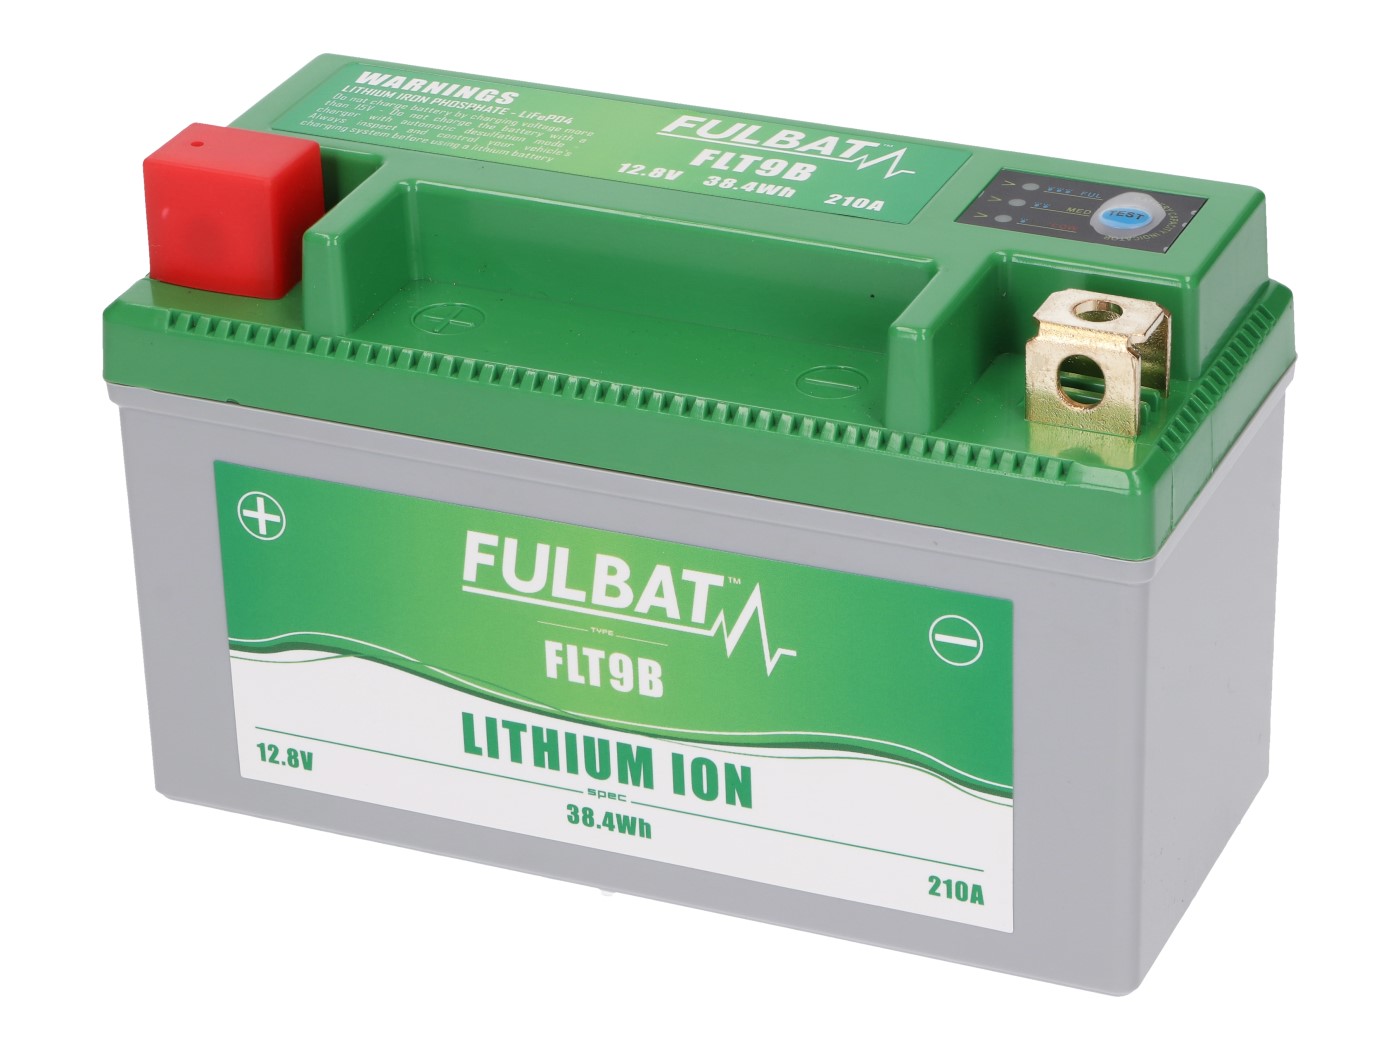 Fulbat FLT9B Lithium-Ion M/C